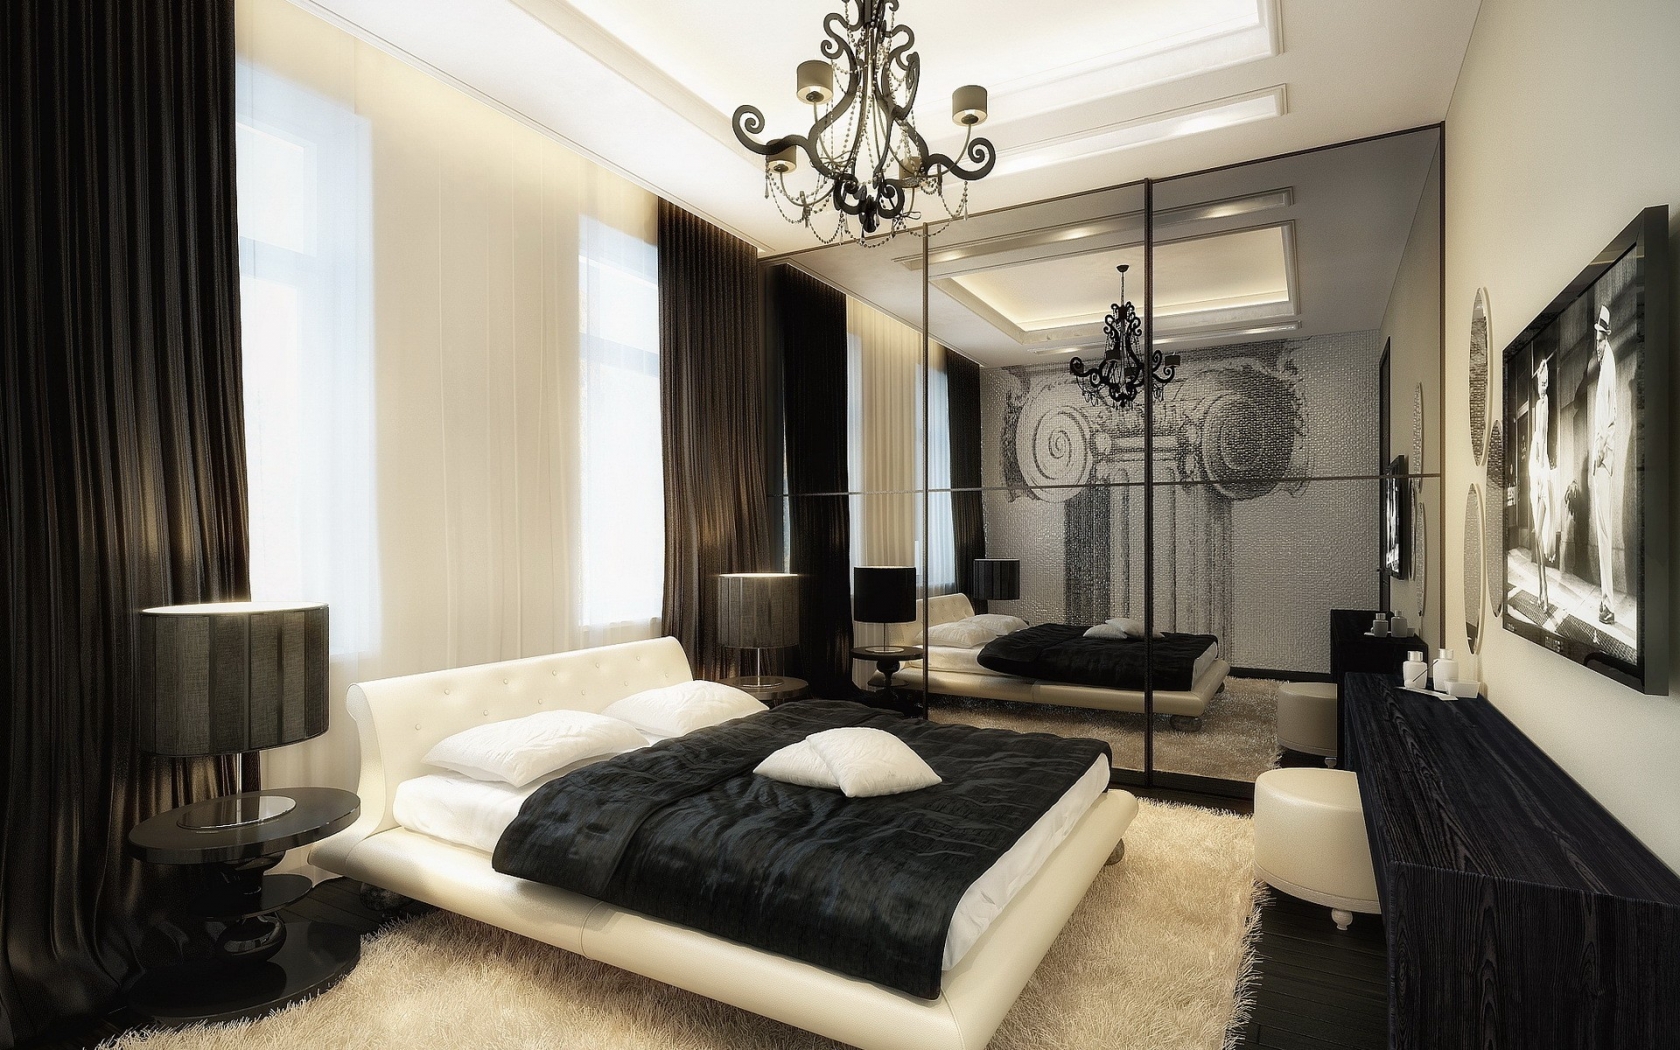 Splendid Bedroom Design for 1680 x 1050 widescreen resolution